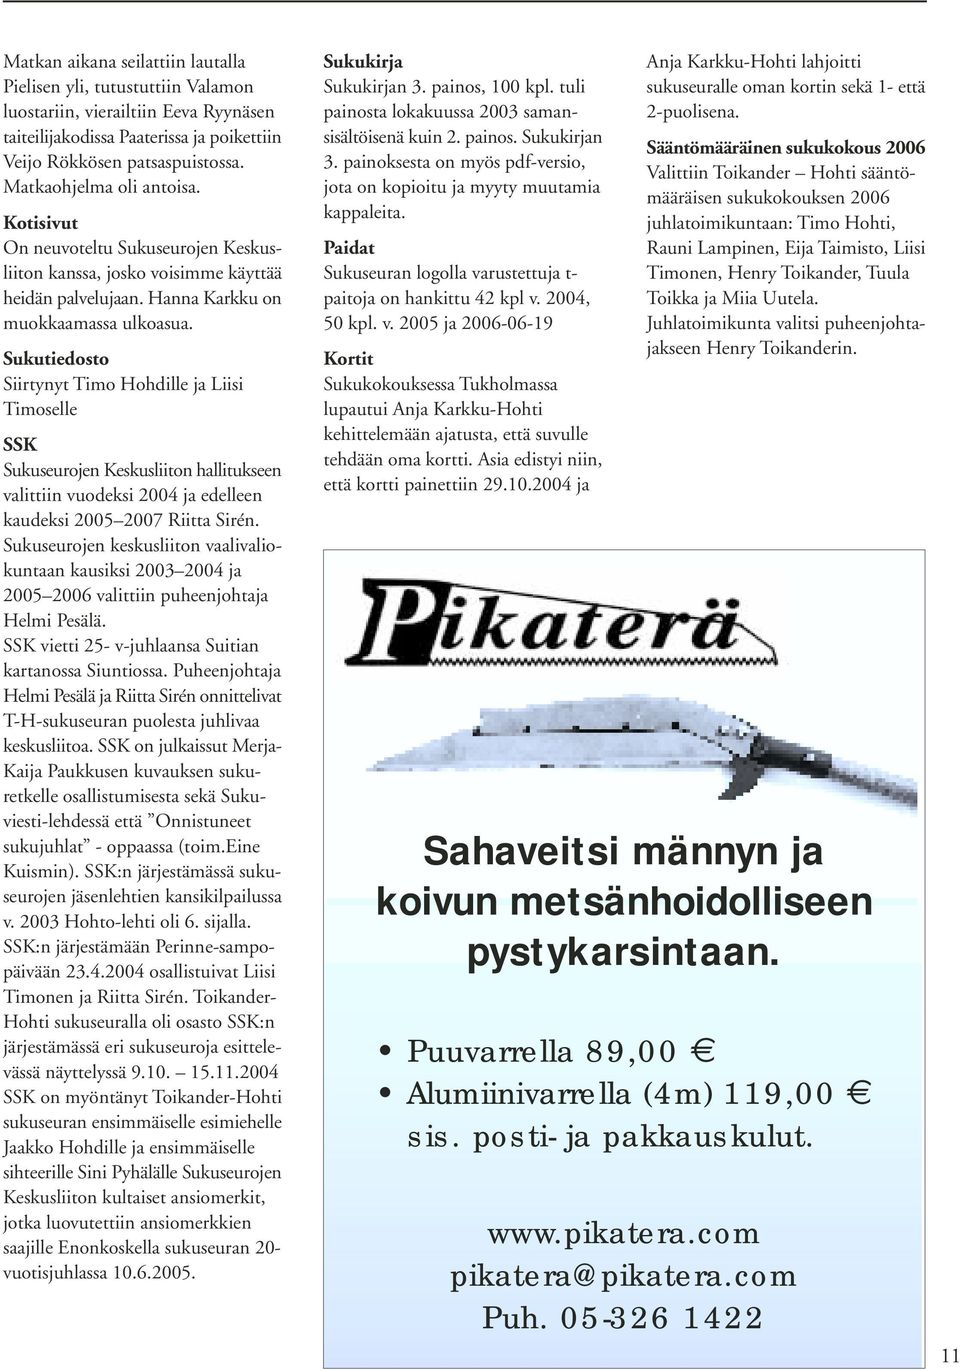 Sukutiedosto Siirtynyt Timo Hohdille ja Liisi Timoselle SSK Sukuseurojen Keskusliiton hallitukseen valittiin vuodeksi 2004 ja edelleen kaudeksi 2005 2007 Riitta Sirén.